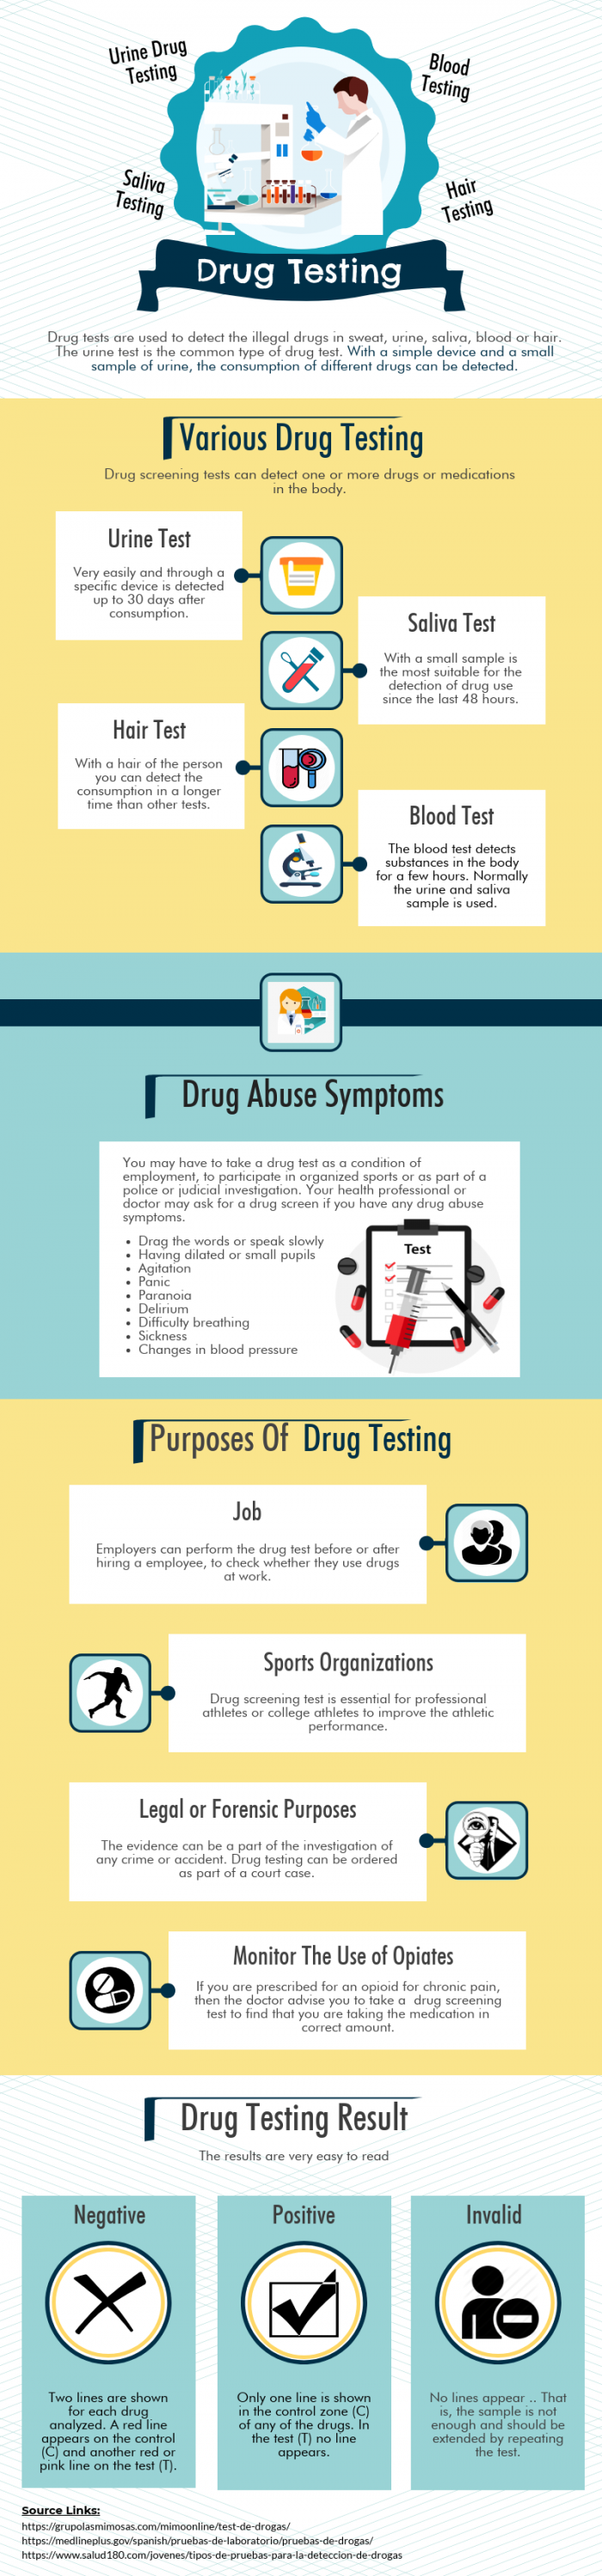 10 Myths About Drug Testing